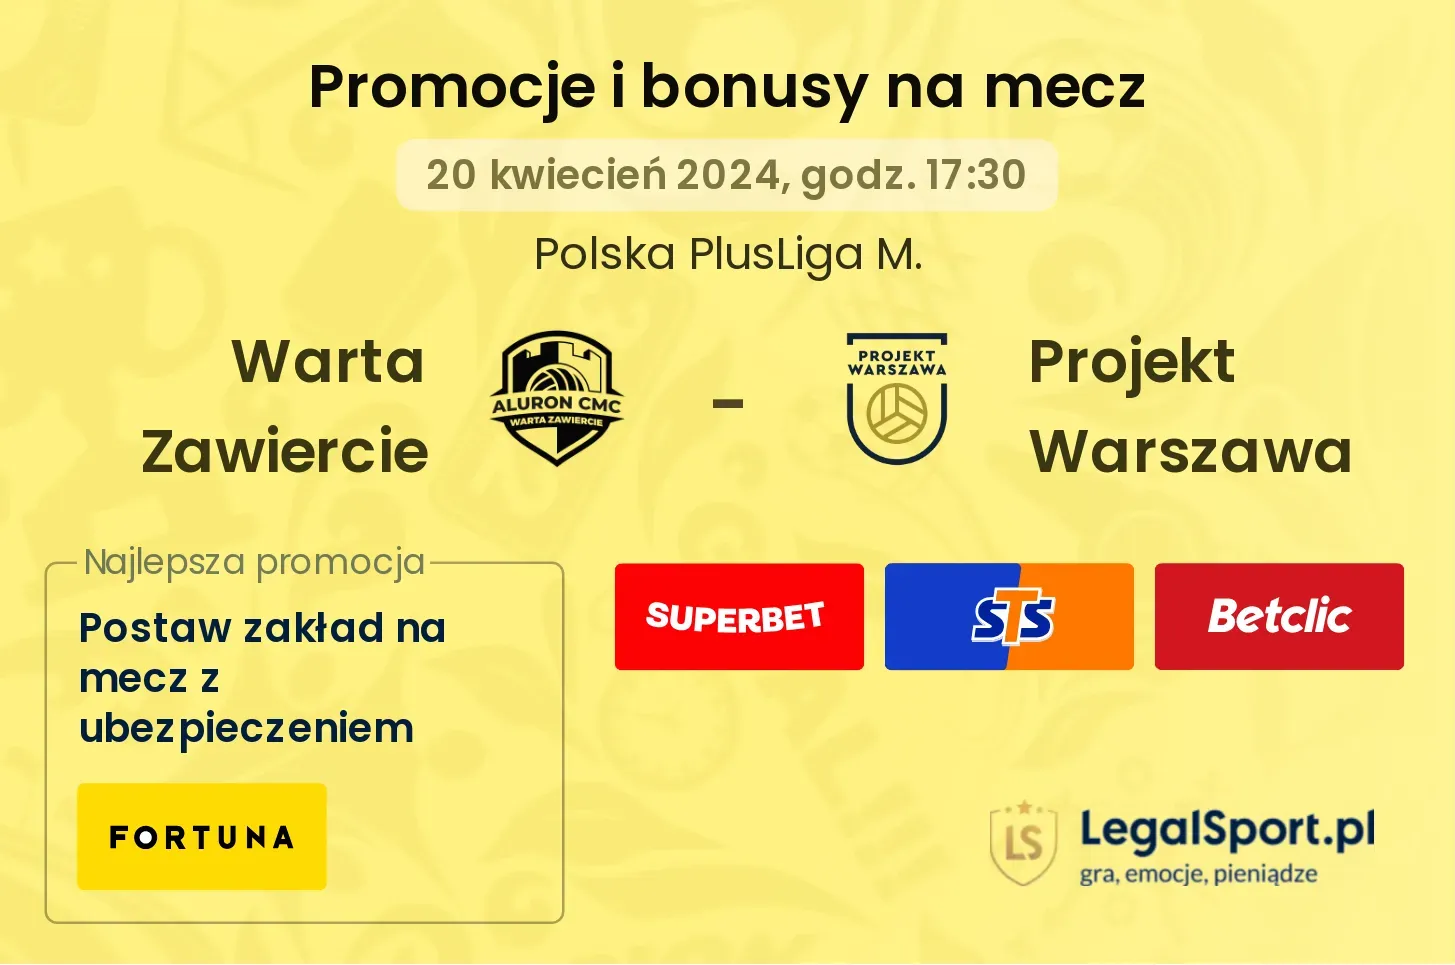 Warta Zawiercie - Projekt Warszawa promocje bonusy na mecz